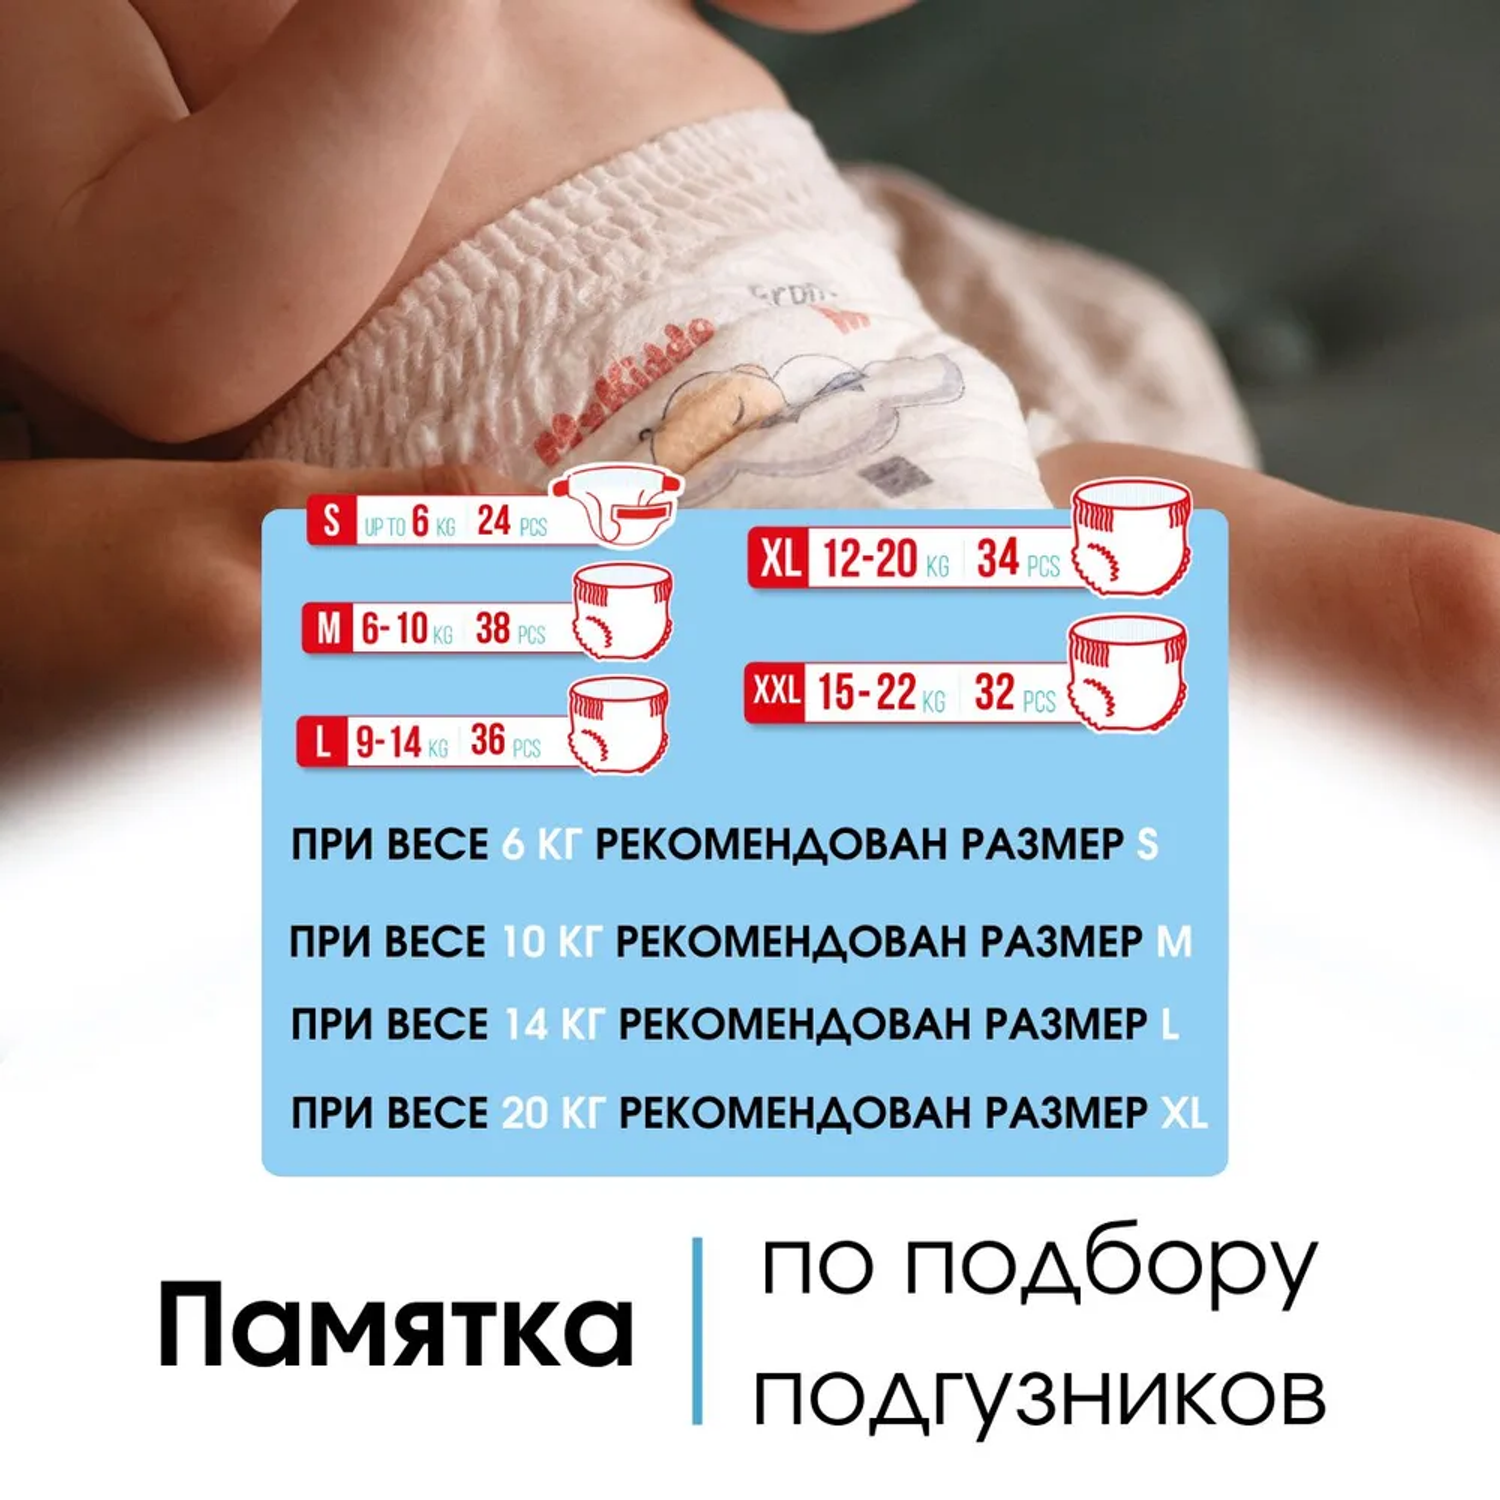 Подгузники MyKiddo Premium для новорожденных 0-6 кг размер S 2 уп по 24 шт - фото 5